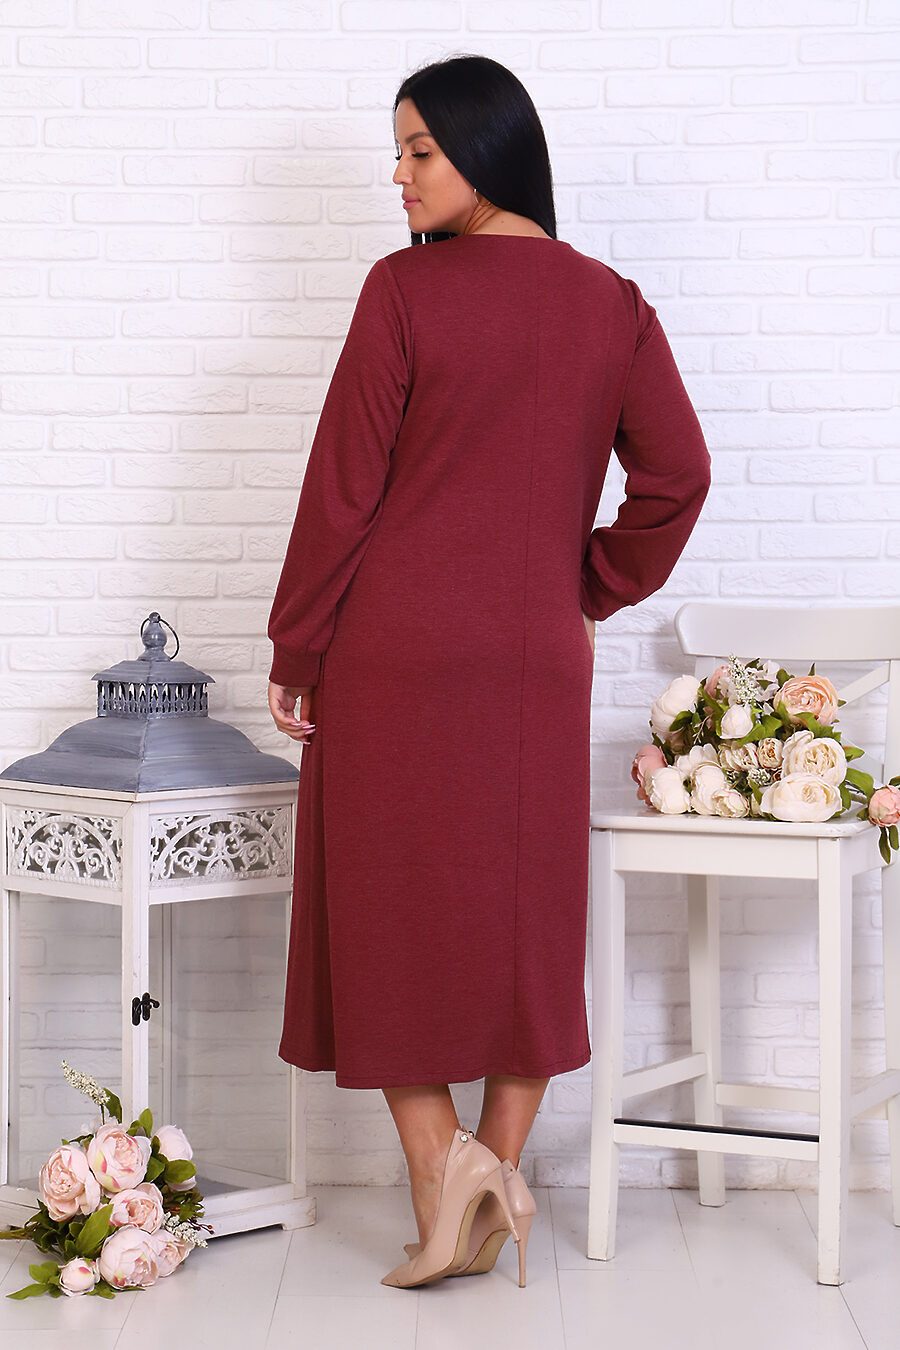 Платье 31567 для женщин НАТАЛИ 719195 купить оптом от производителя. Совместная покупка женской одежды в OptMoyo